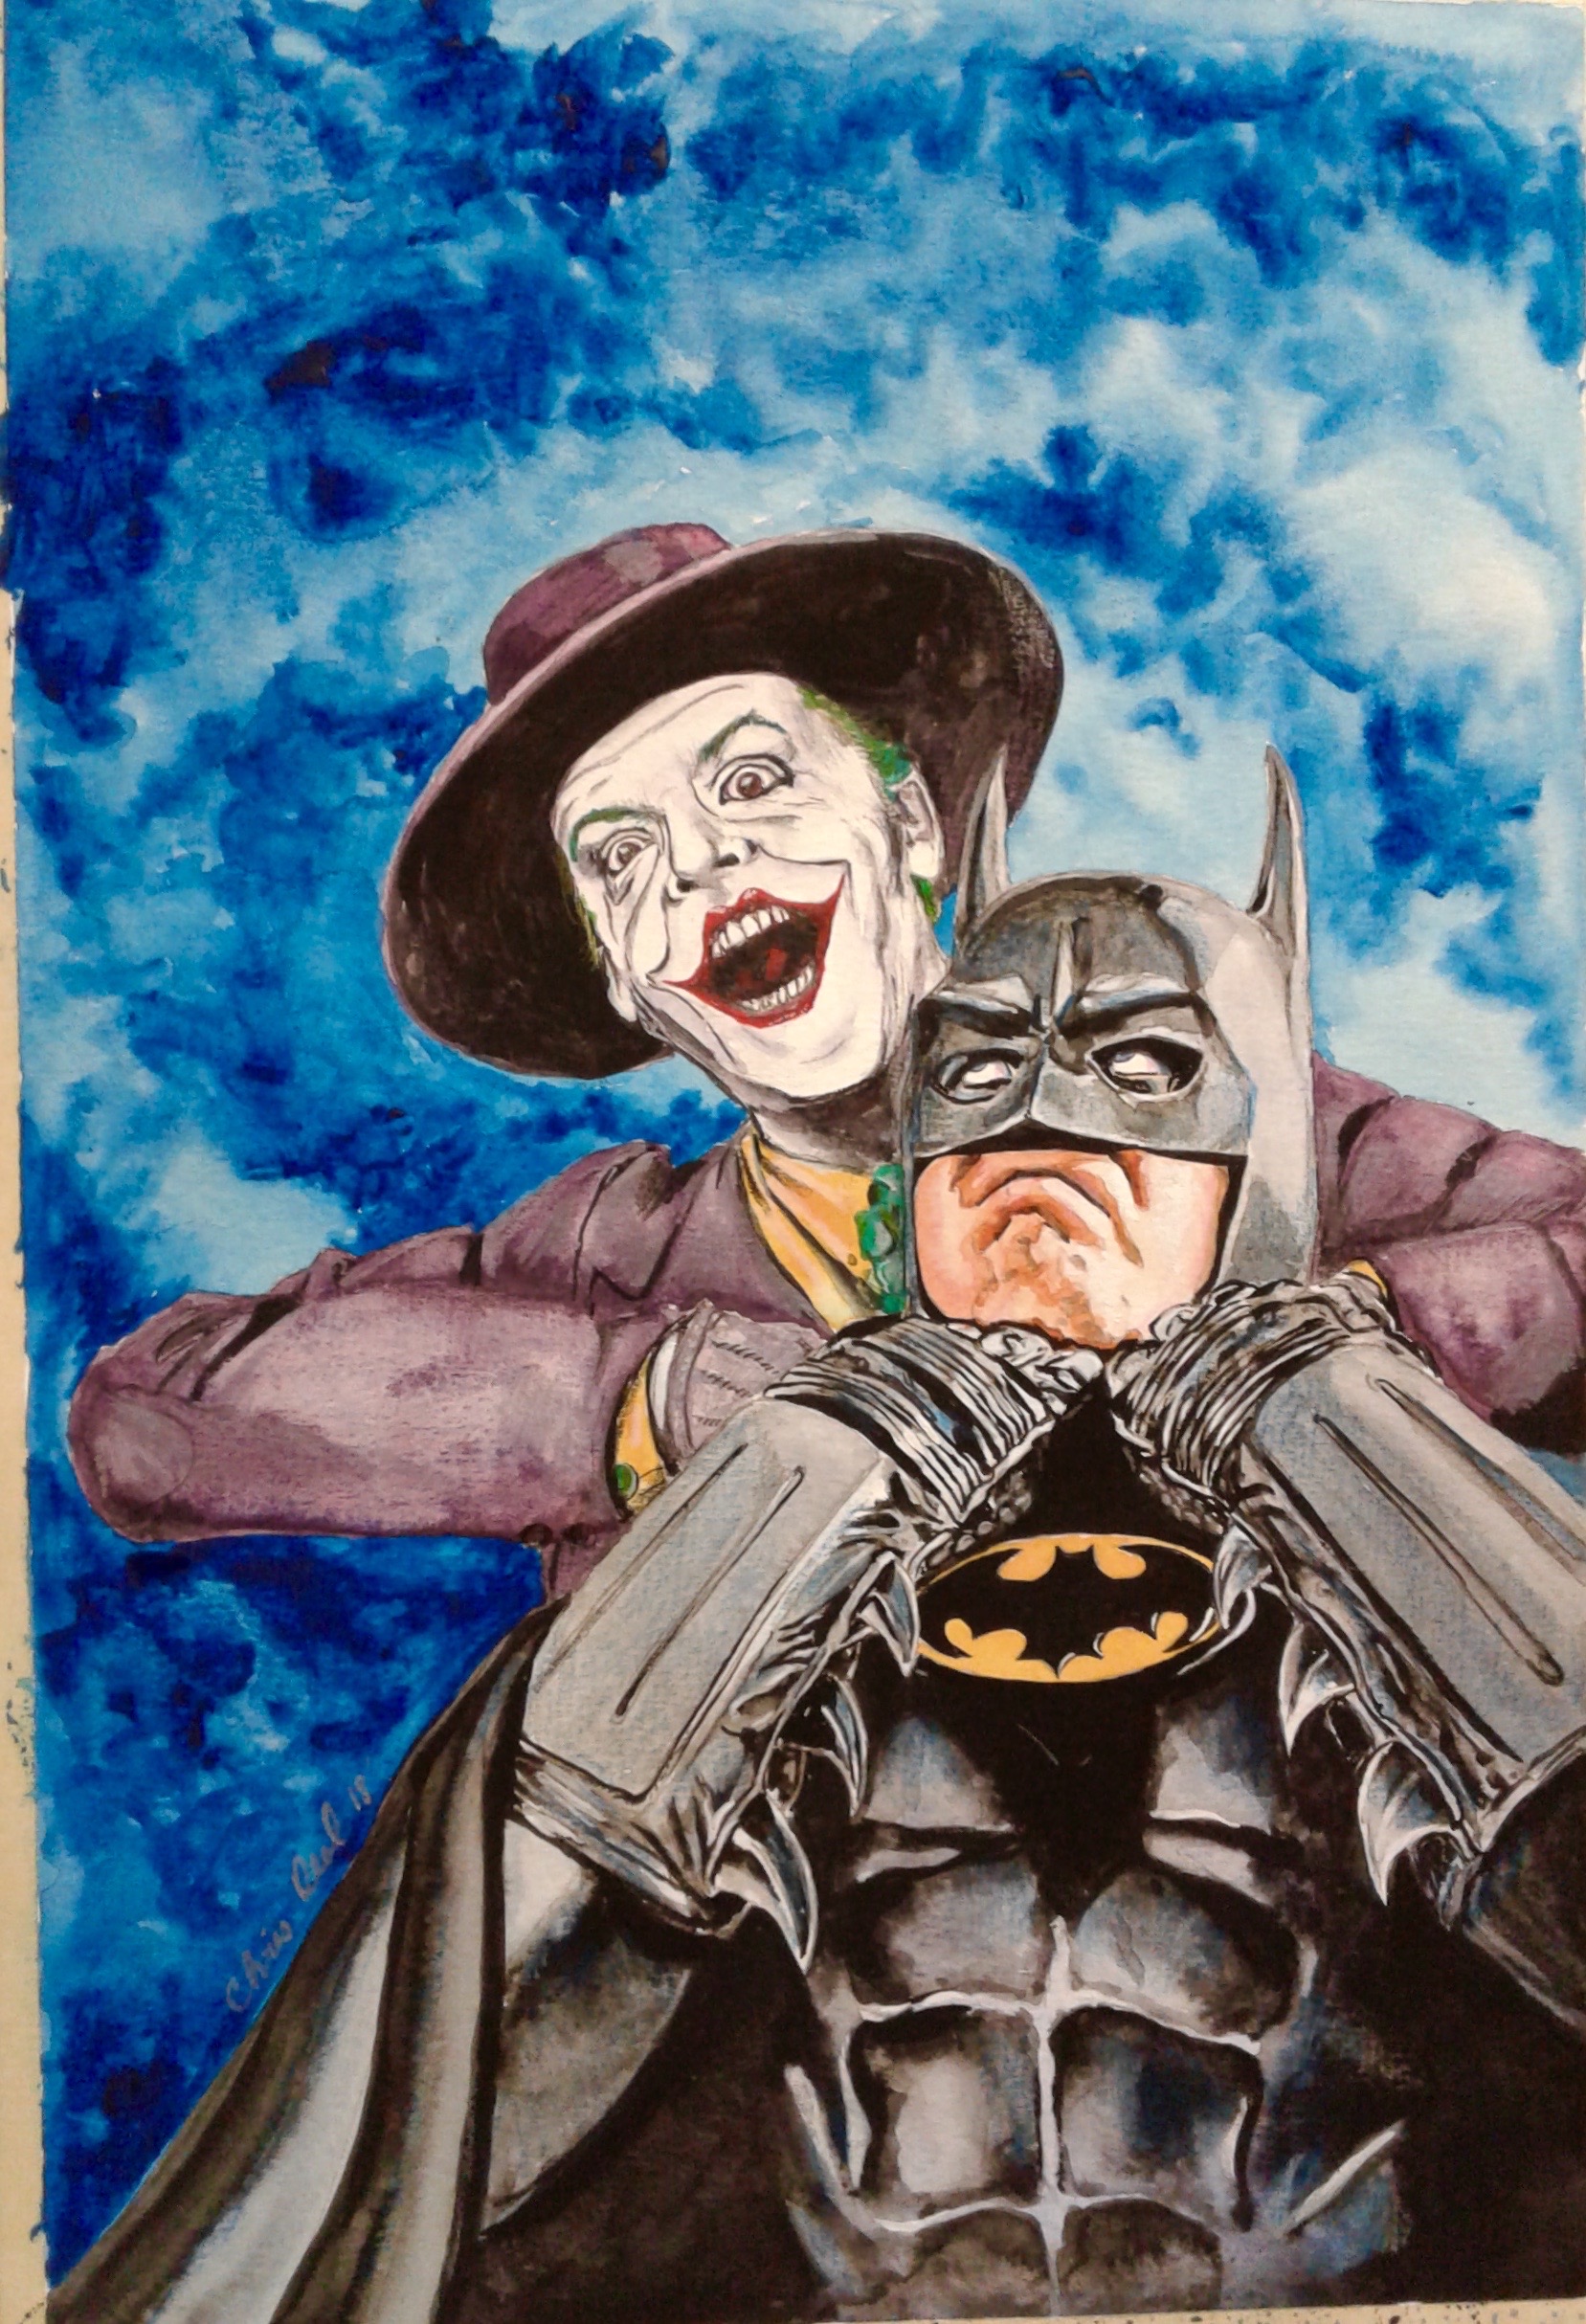 Batman 1989 watercolor by batman1989freak on DeviantArt